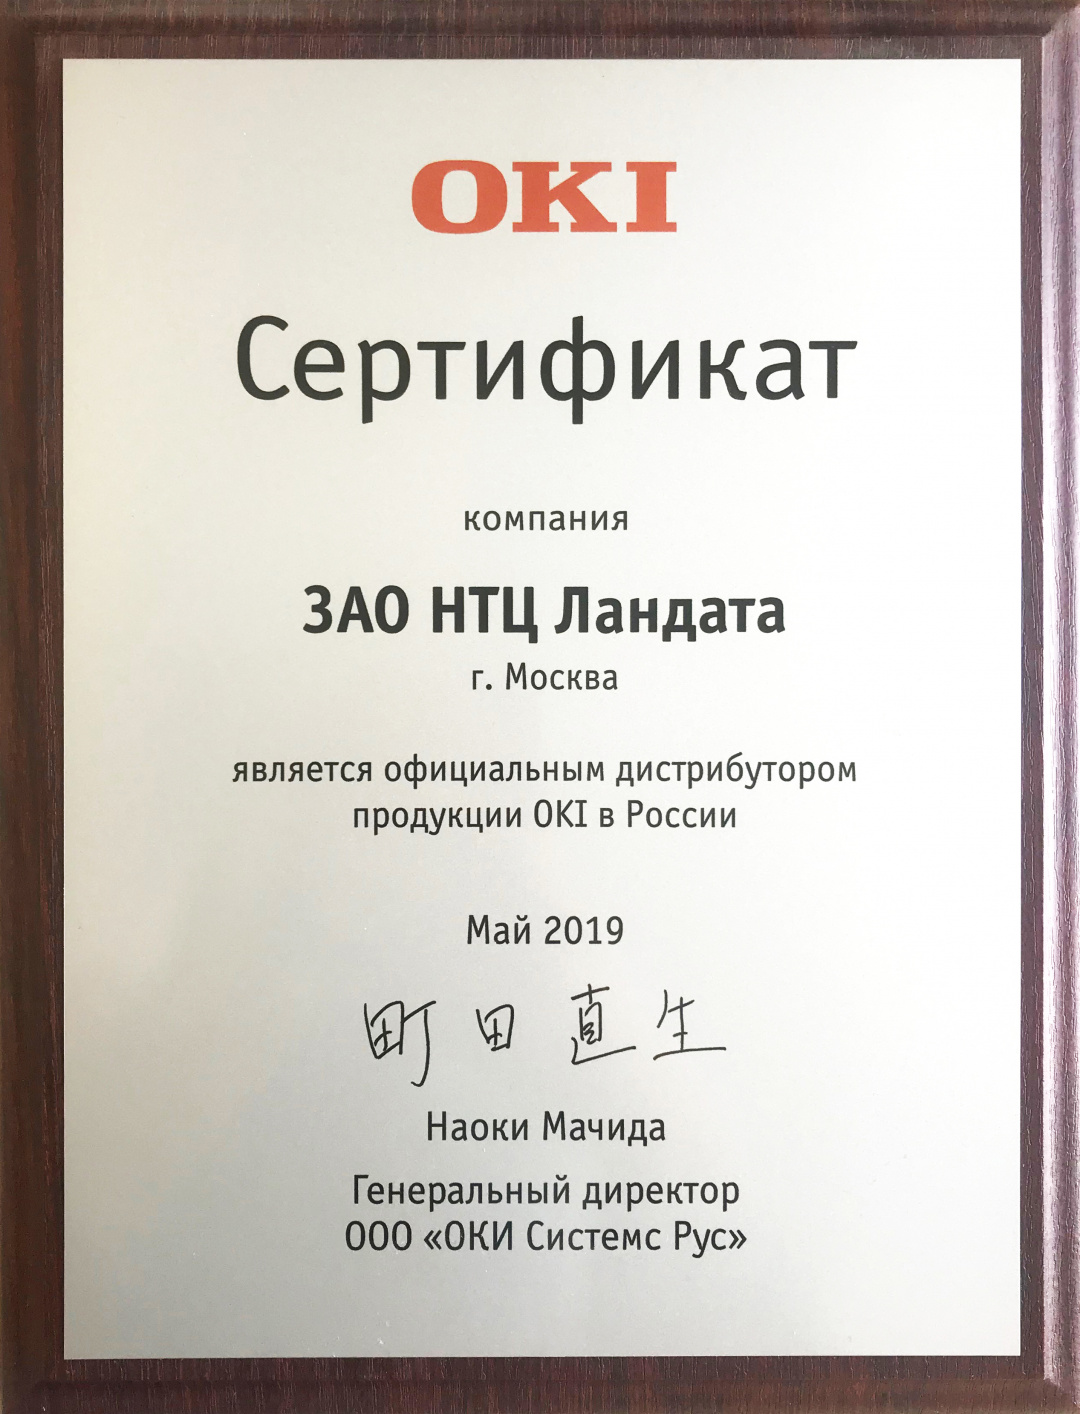 Сертификат подтверждает, что компания Landata является официальным дистрибутором продукции OKI в России